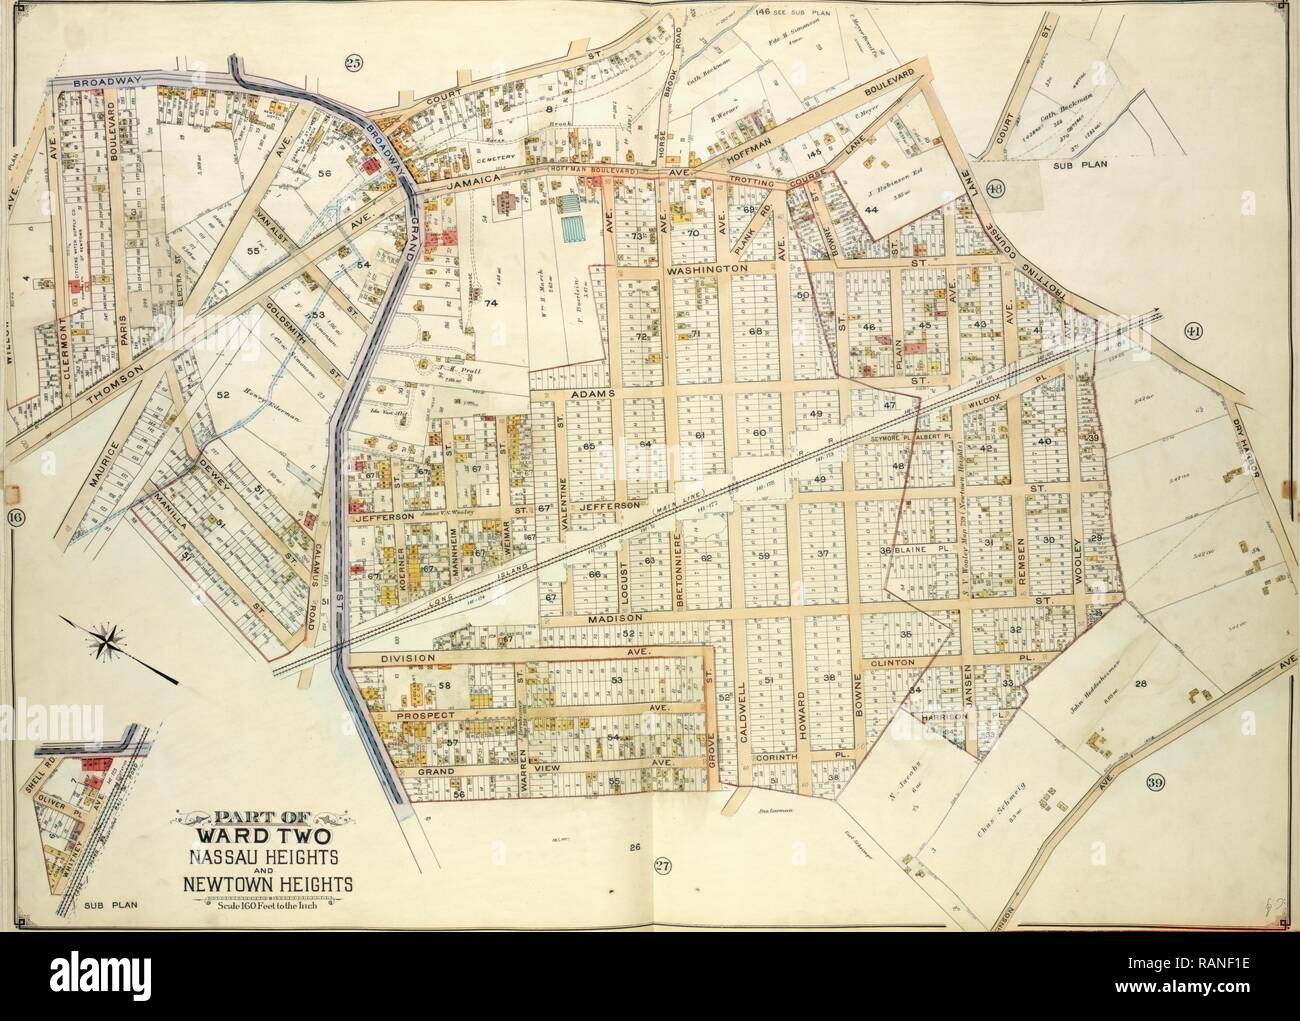 Queens, Vol. 2, doppia piastra pagina n. 26, parte di Ward due altezze di Nassau e Newtown Heights, mappa delimitata da reinventato Foto Stock